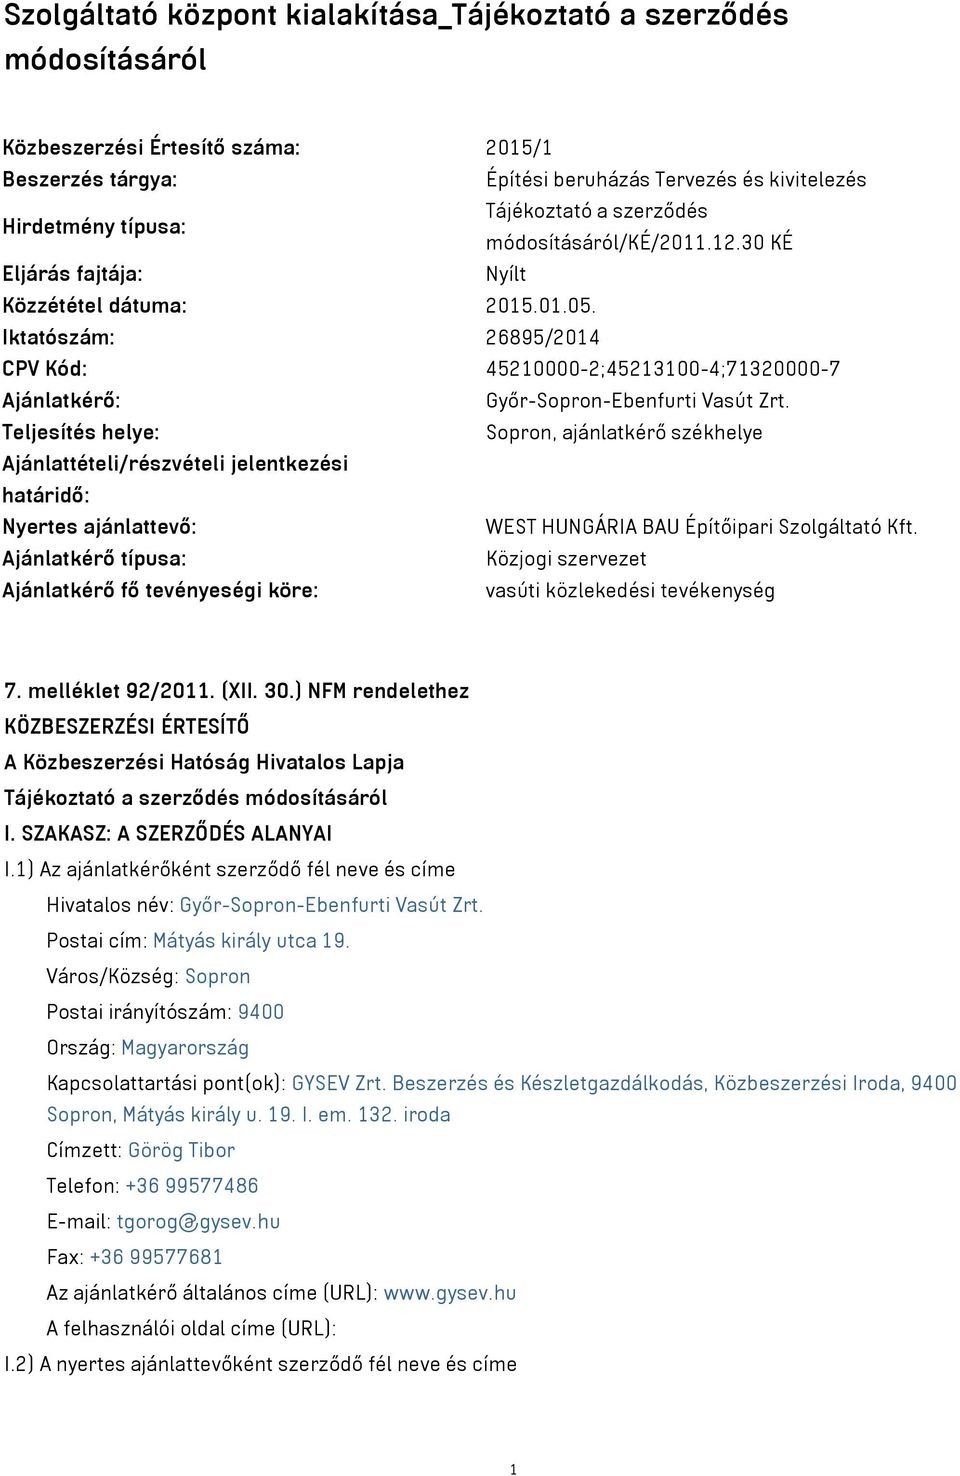 Teljesítés helye: Sopron, ajánlatkérő székhelye Ajánlattételi/részvételi jelentkezési határidő: Nyertes ajánlattevő: WEST HUNGÁRIA BAU Építőipari Szolgáltató Kft.